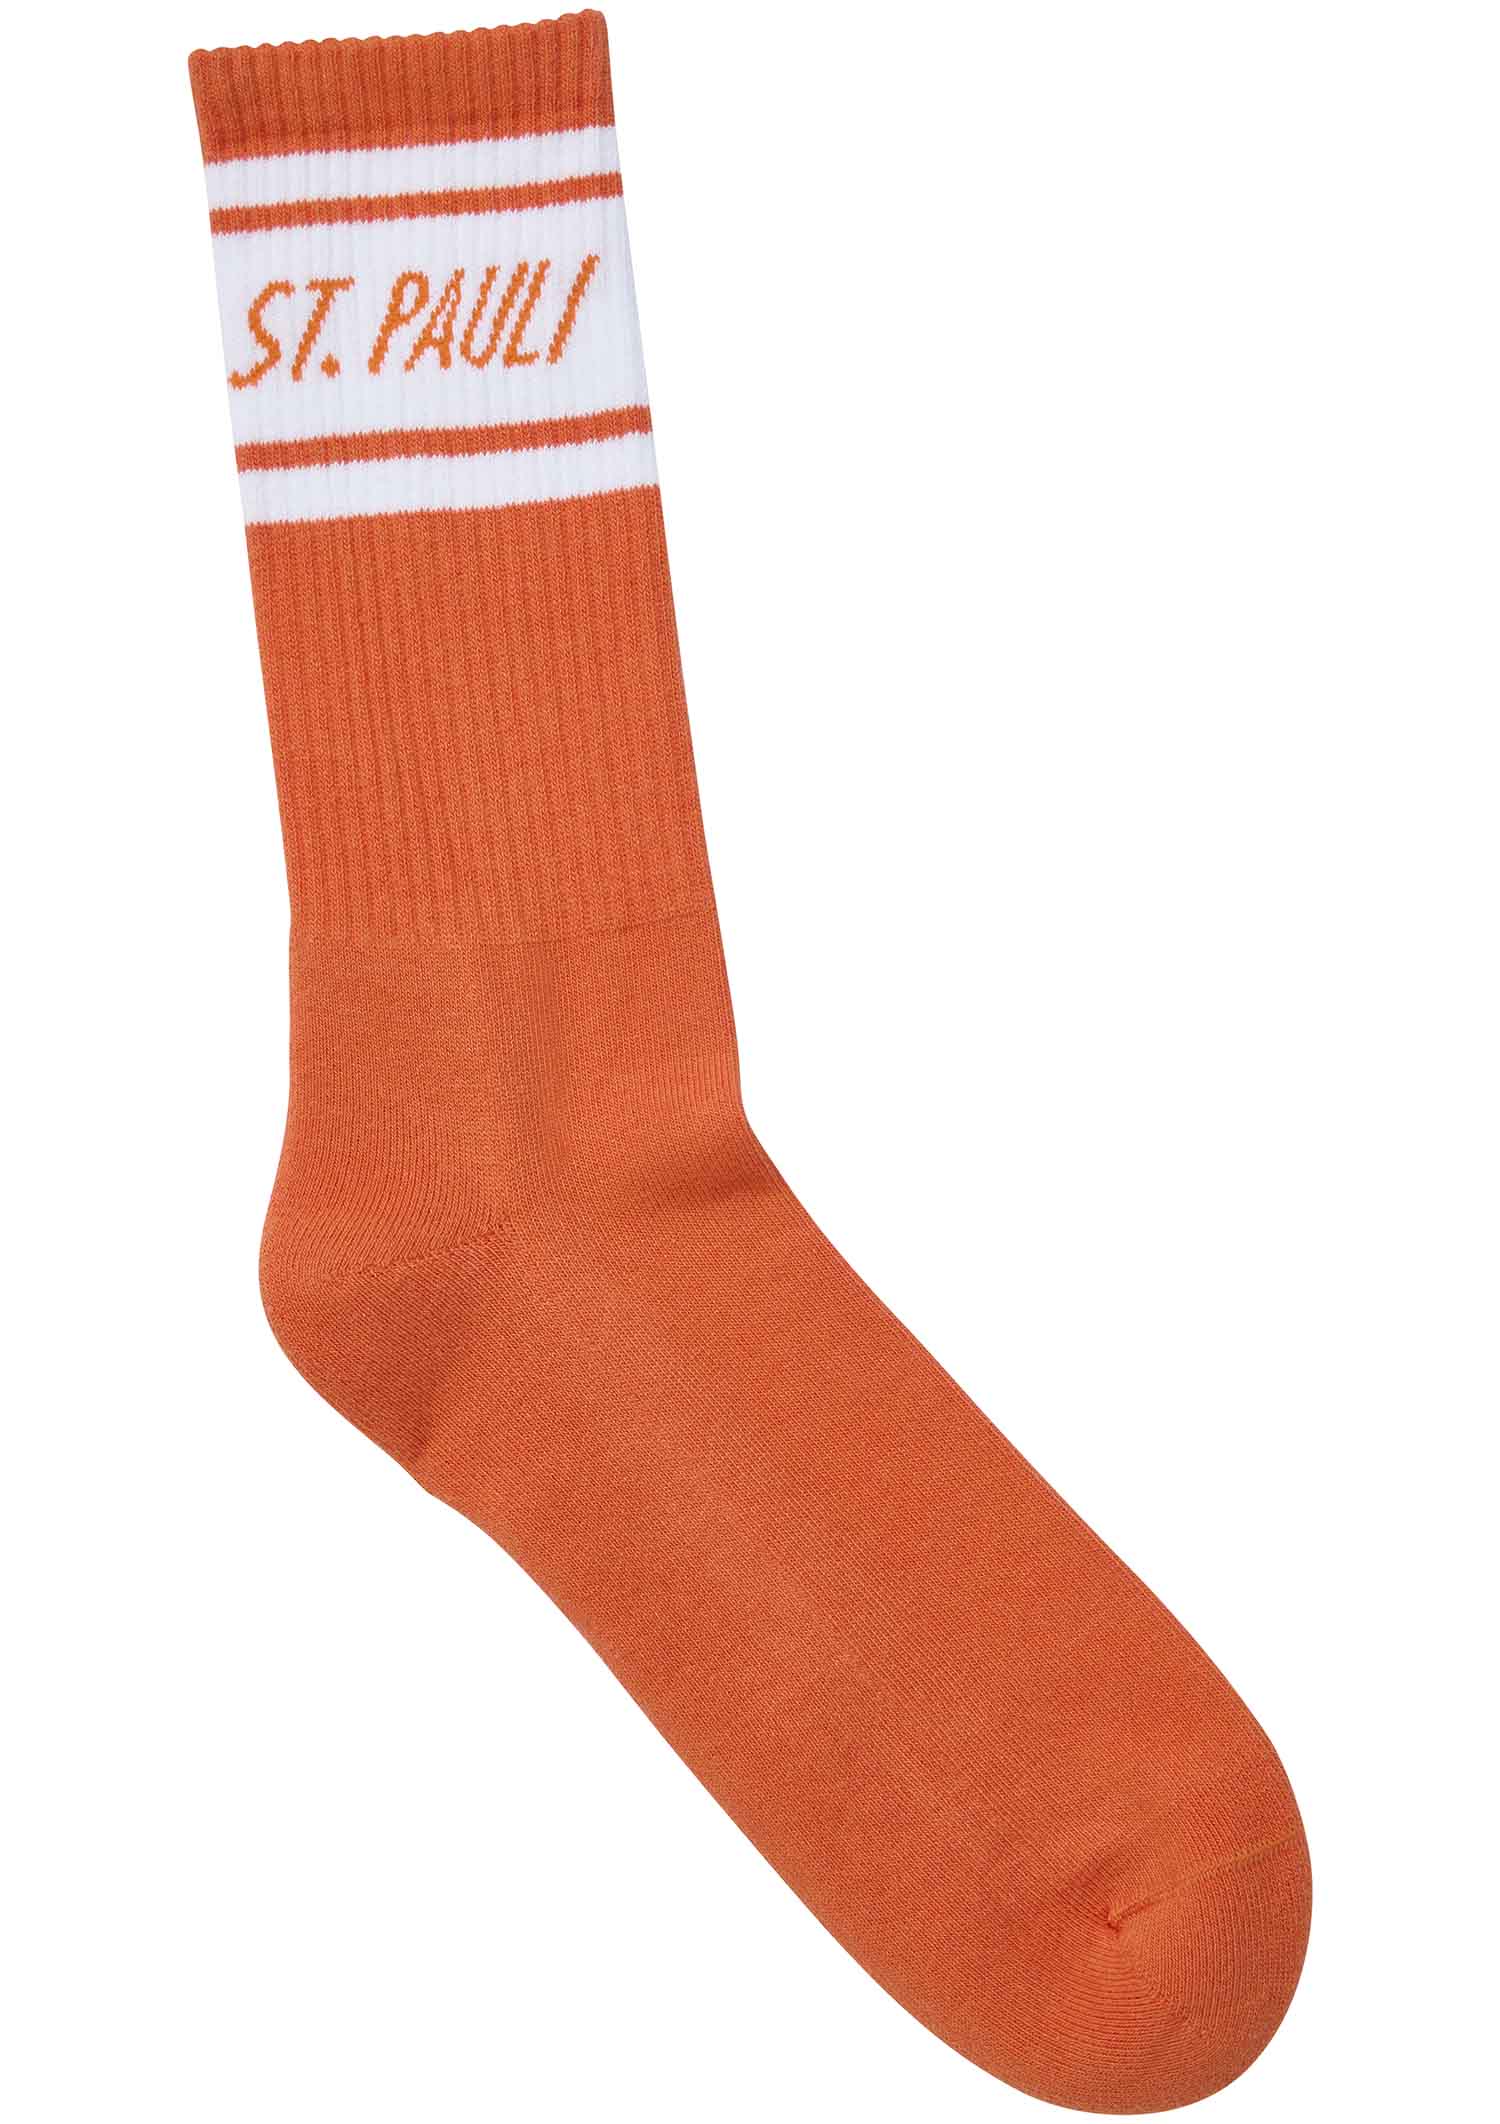 Socks "St. Pauli" - orange